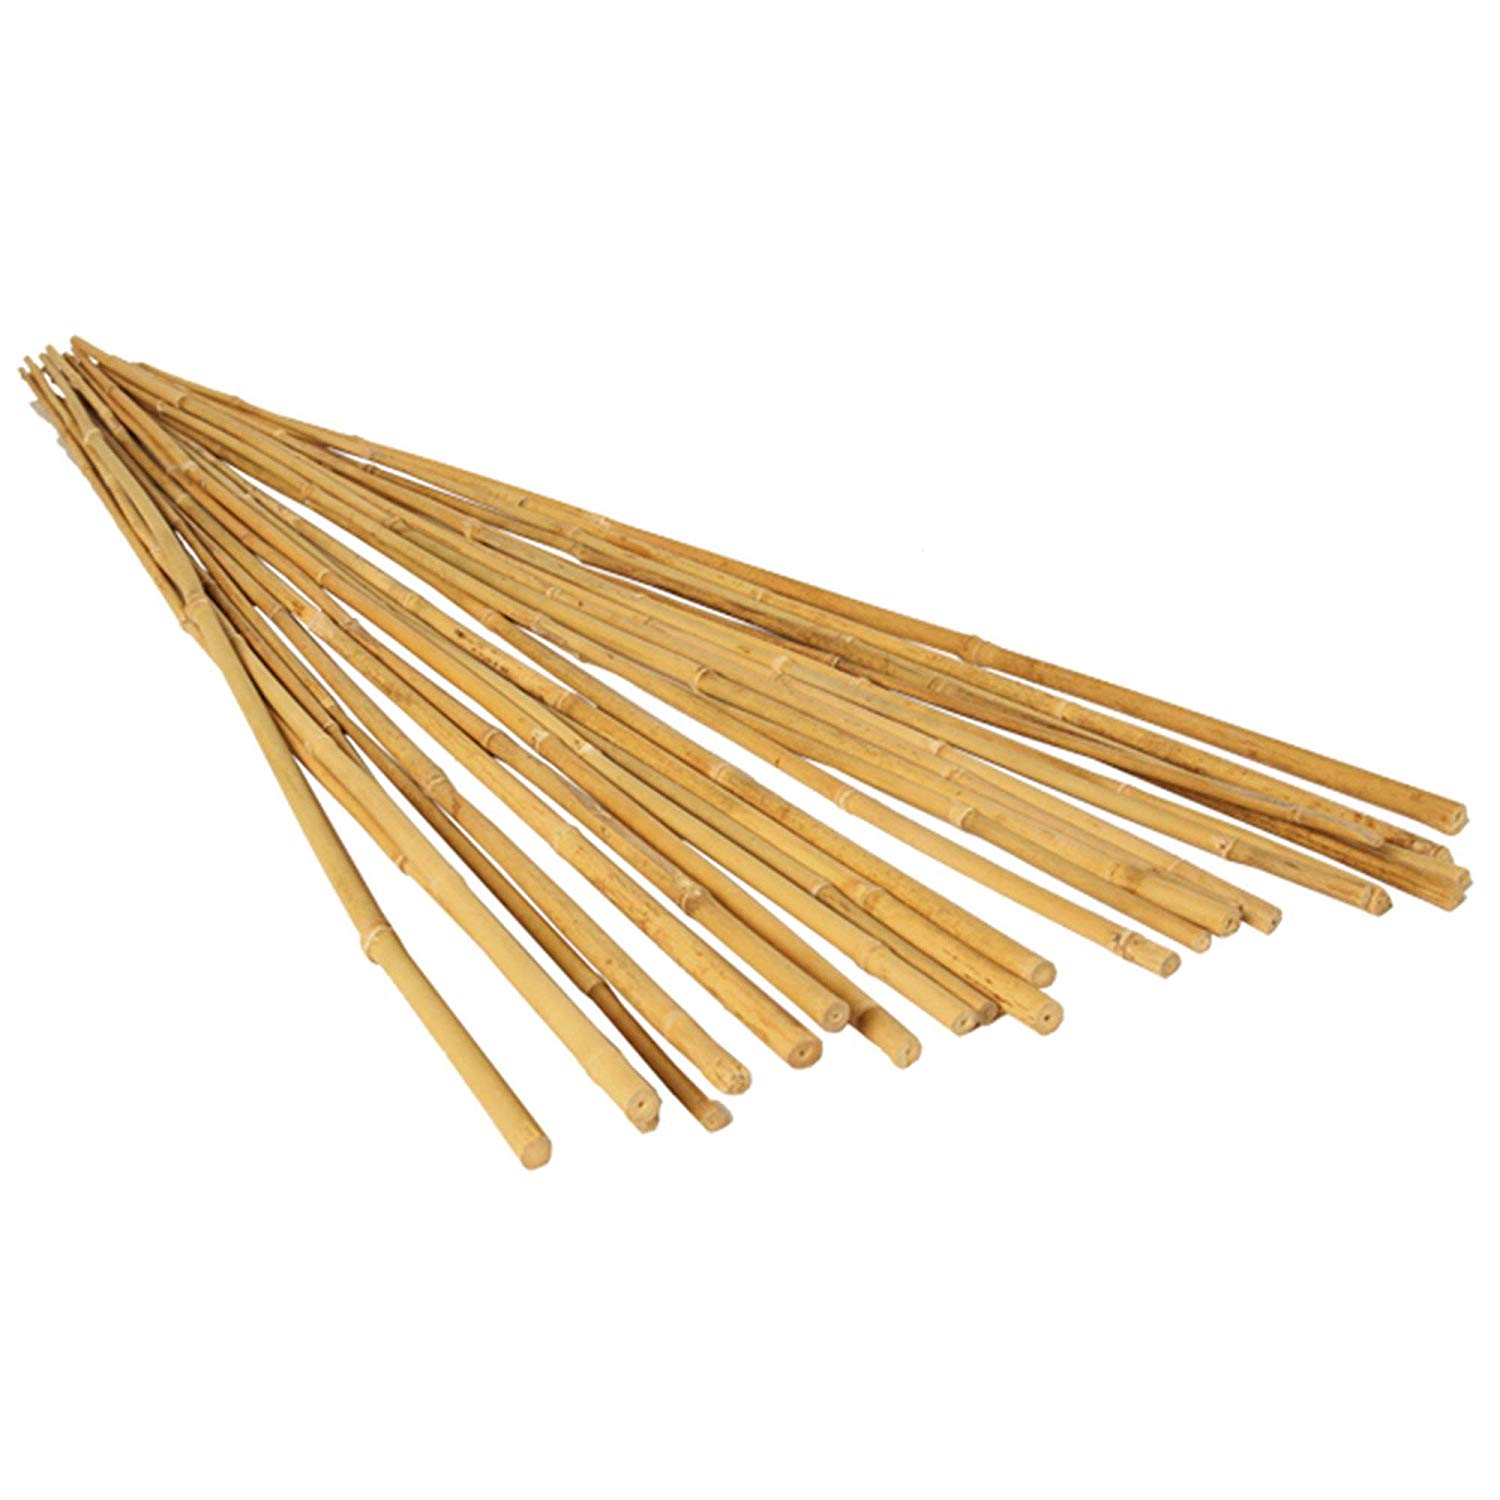 Bamboo Stake 4 FT. (25PCS/BDL)